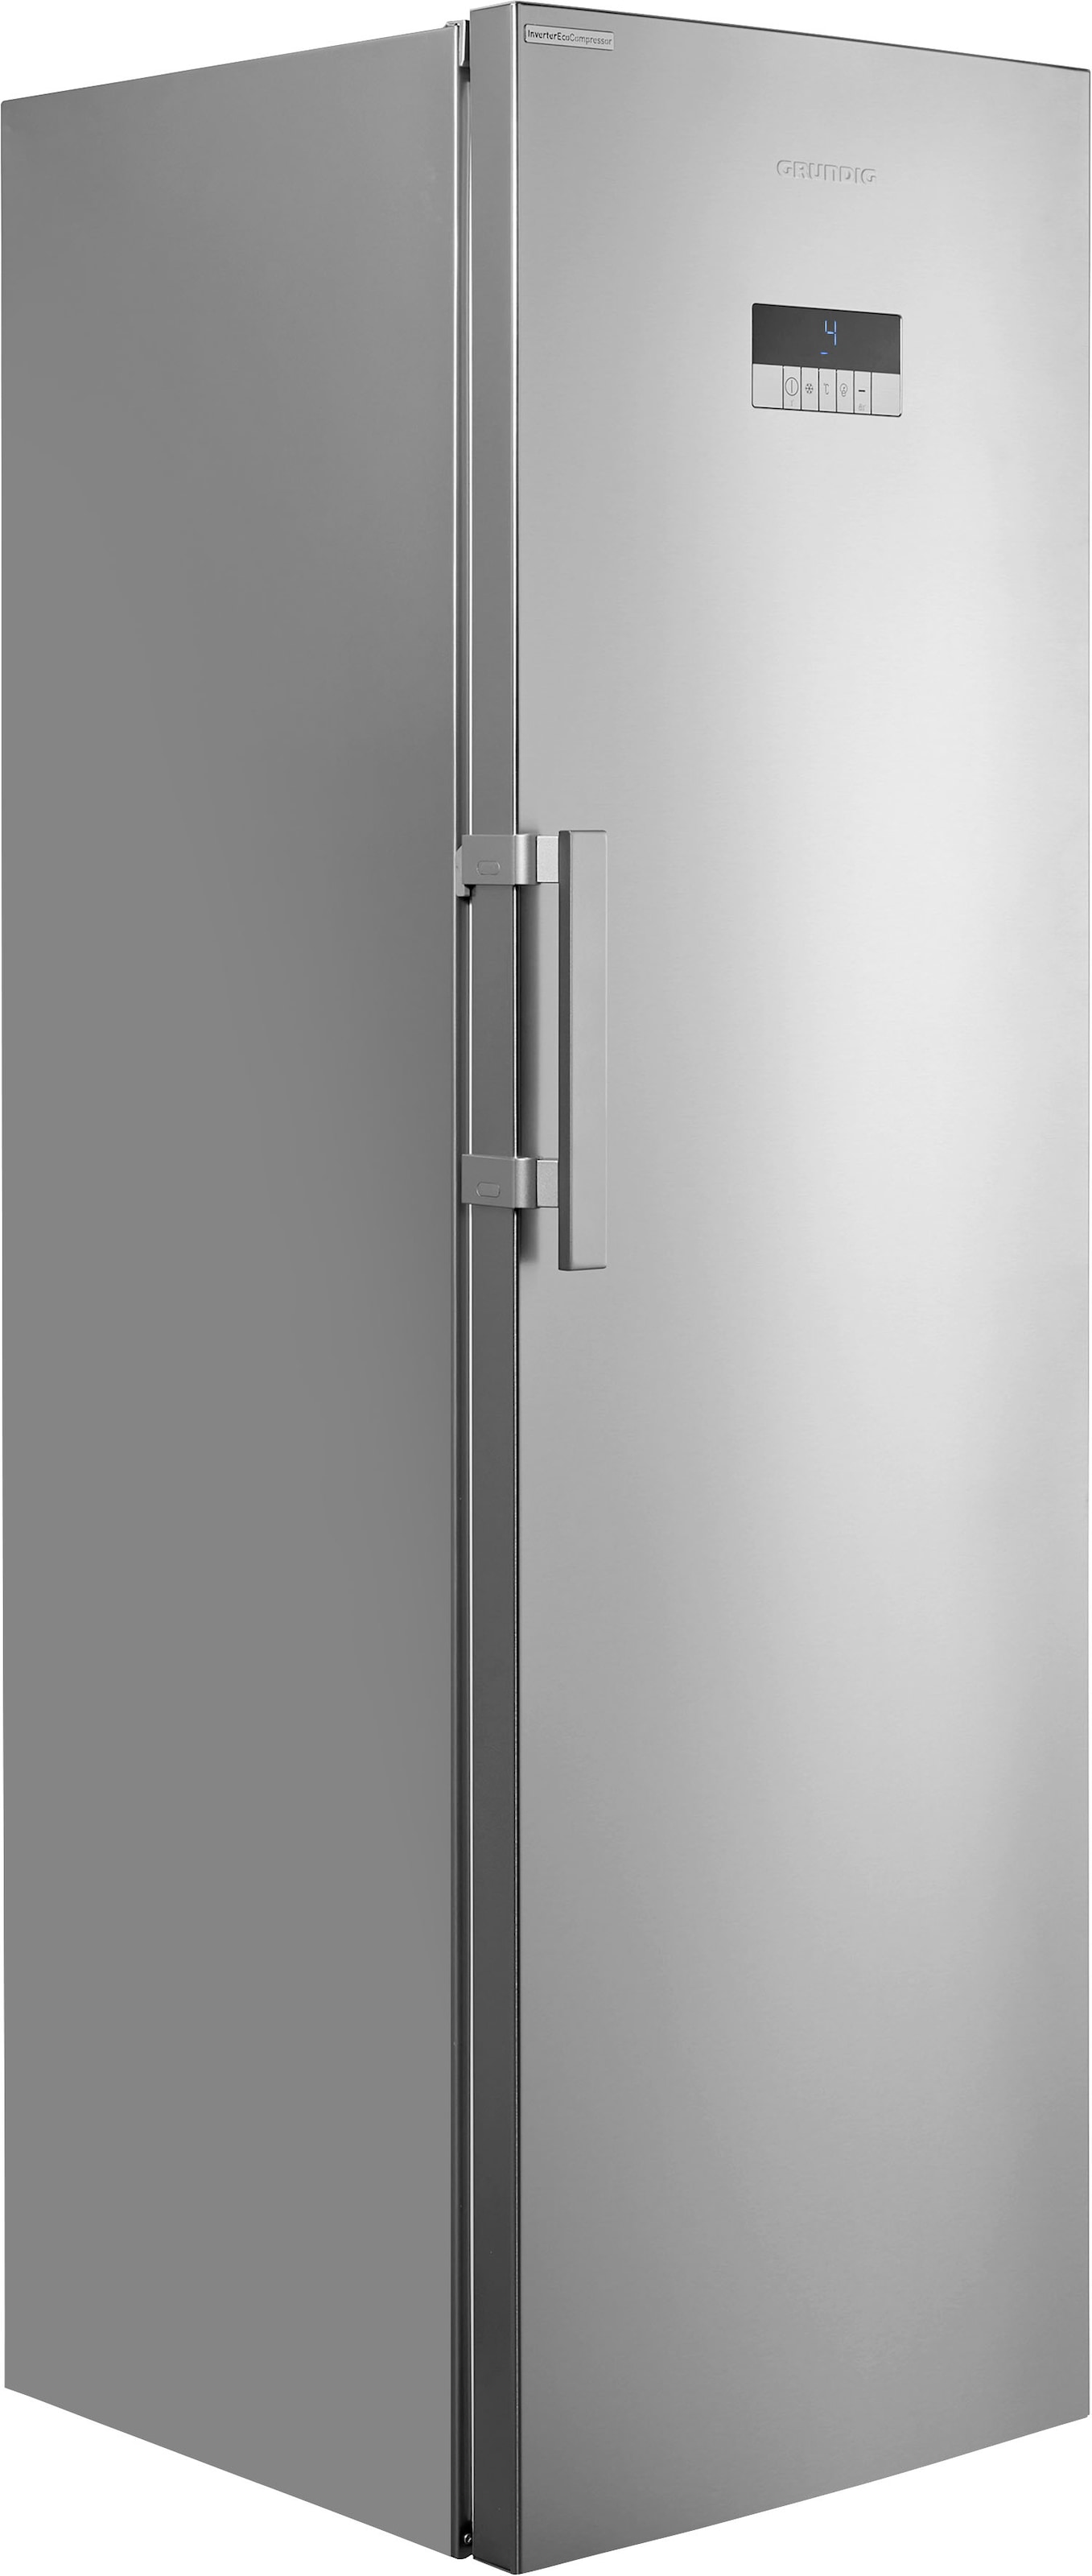 Grundig Gefrierschrank »GFN 13840 XN«, 185 cm hoch, 59,5 cm breit